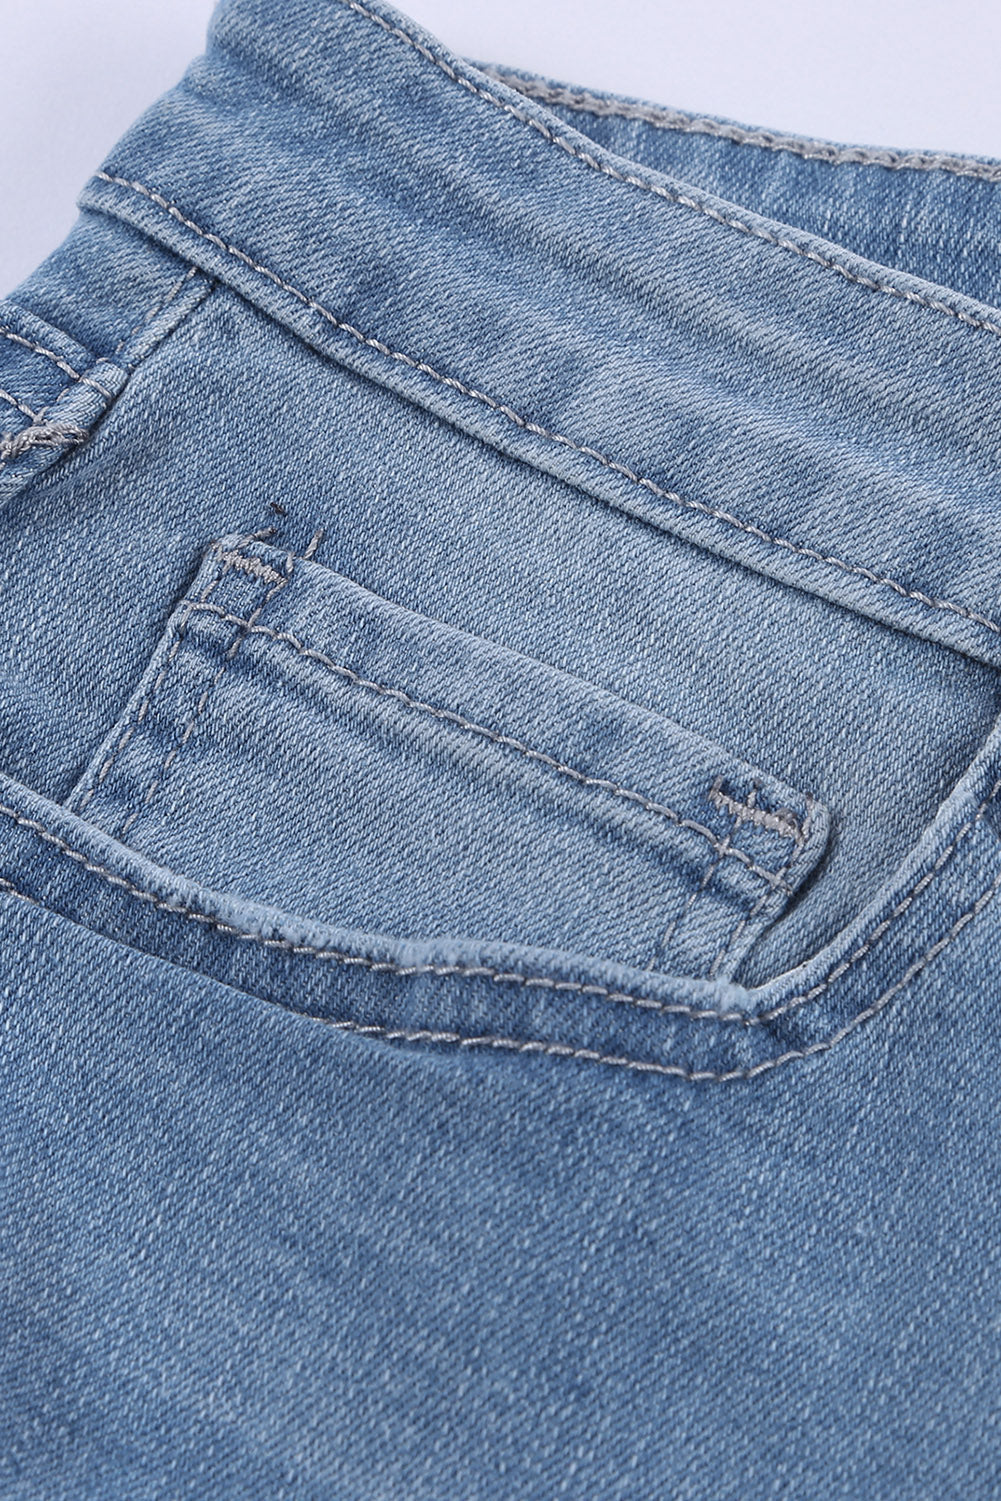 Hellblaue Jeansshorts mit ausgefranstem Saum